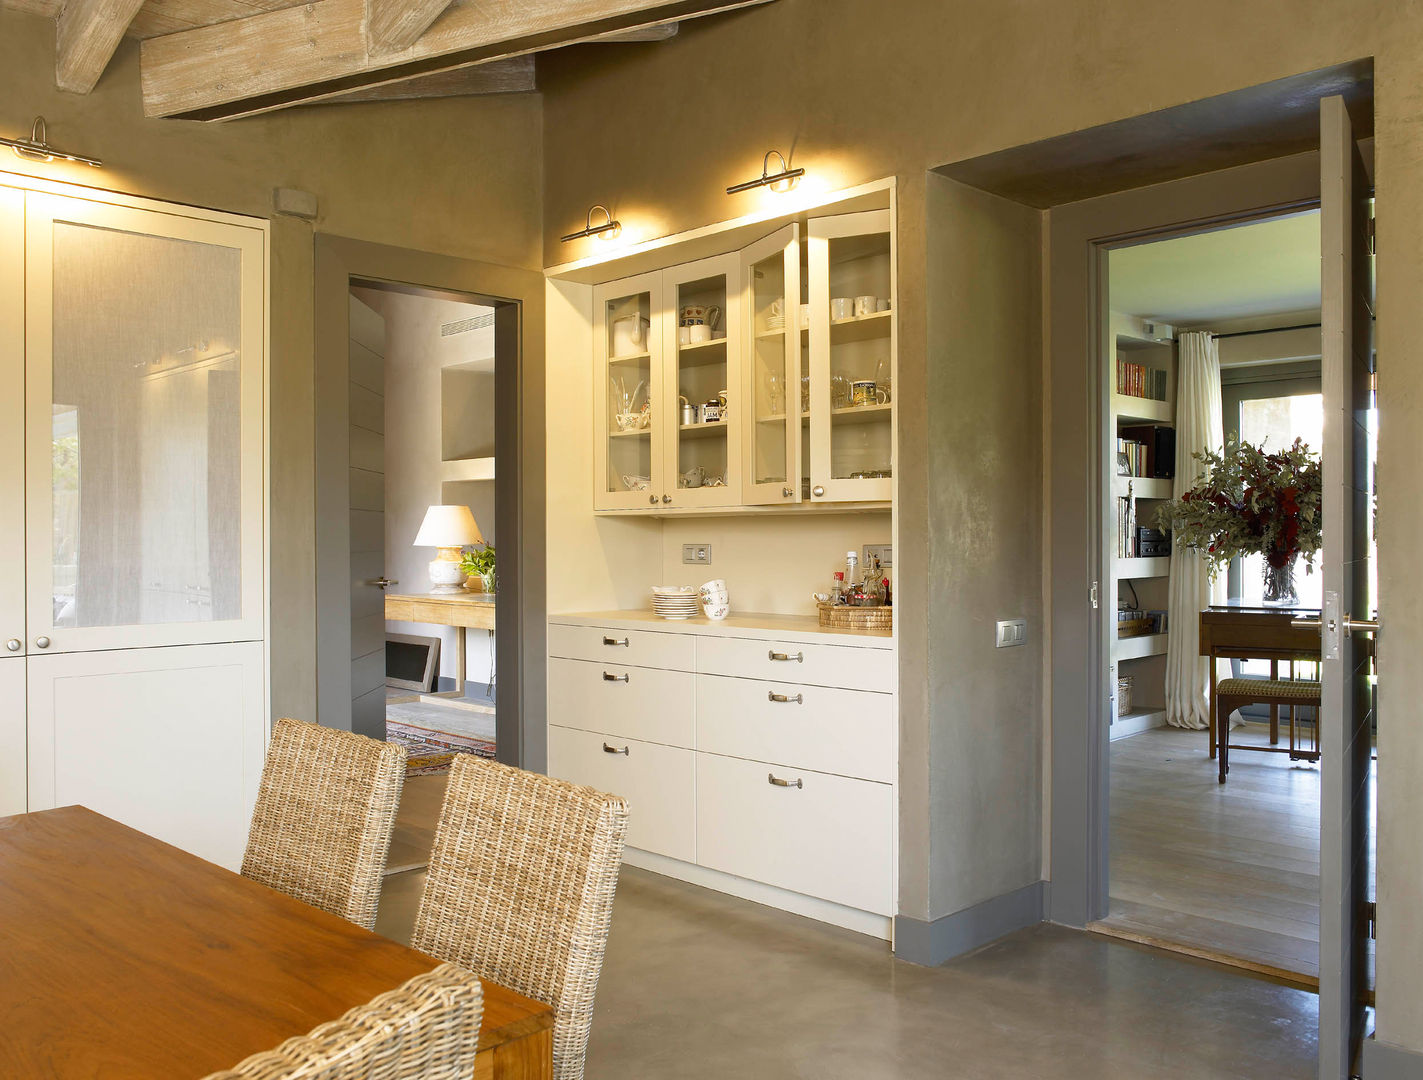 Tres espacios en uno: cocina, lavadero y planchador, DEULONDER arquitectura domestica DEULONDER arquitectura domestica Cuisine rustique